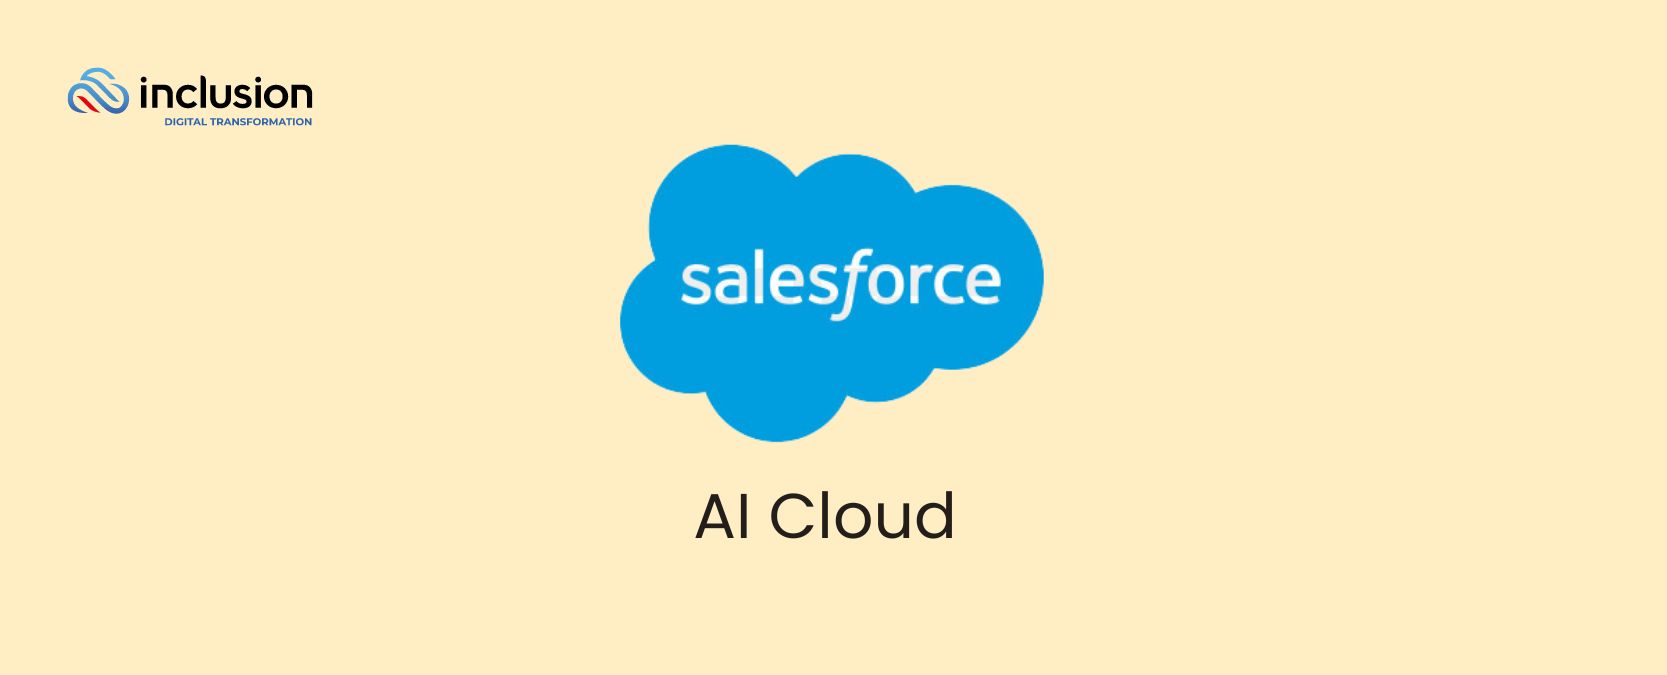 Salesforce AI Cloud